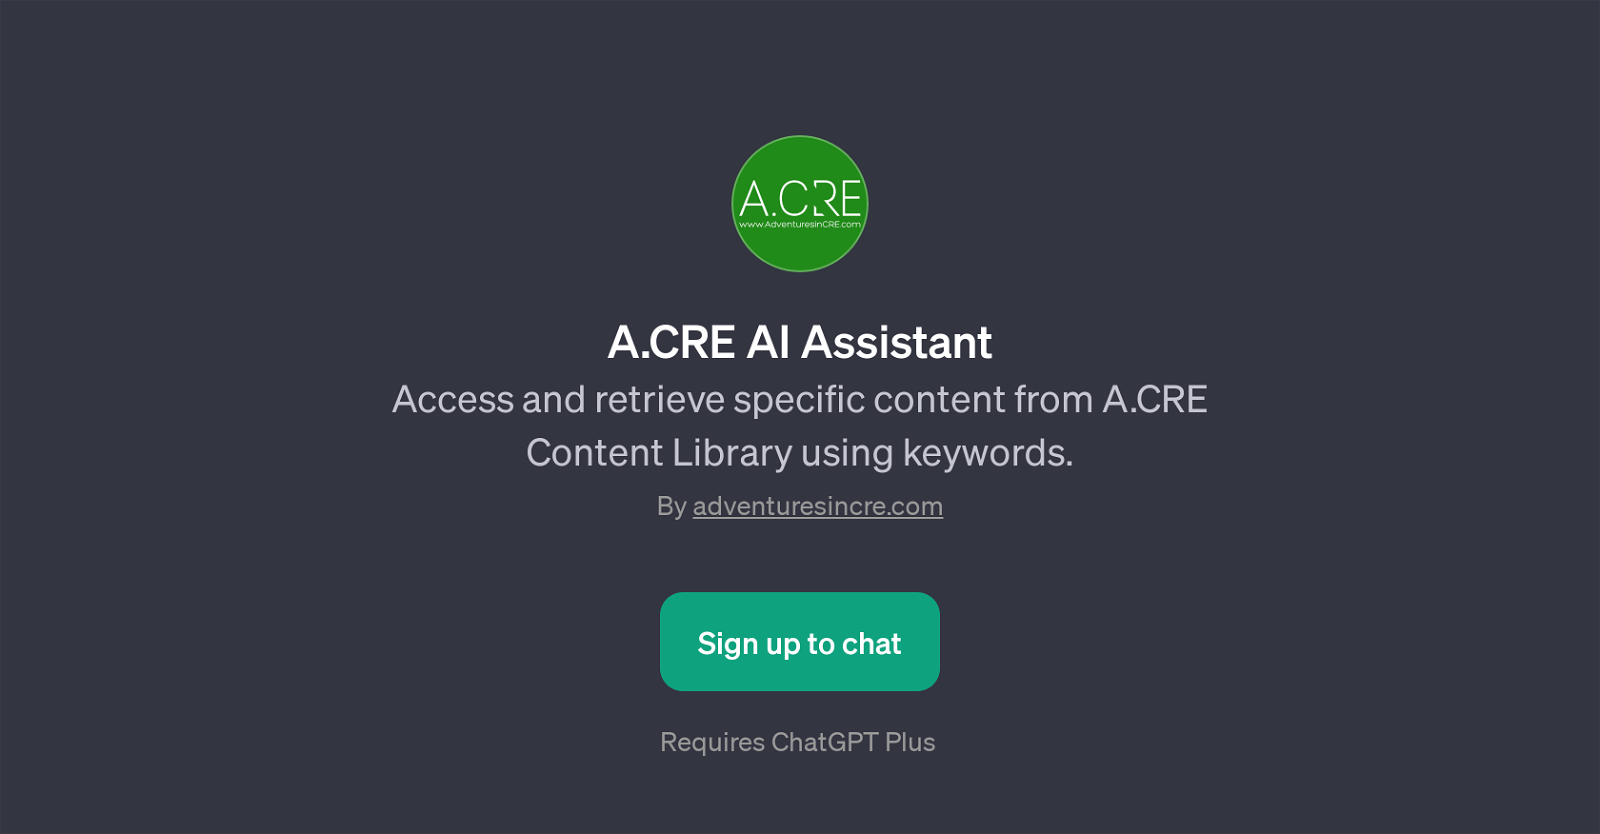 A.CRE AI Assistant website